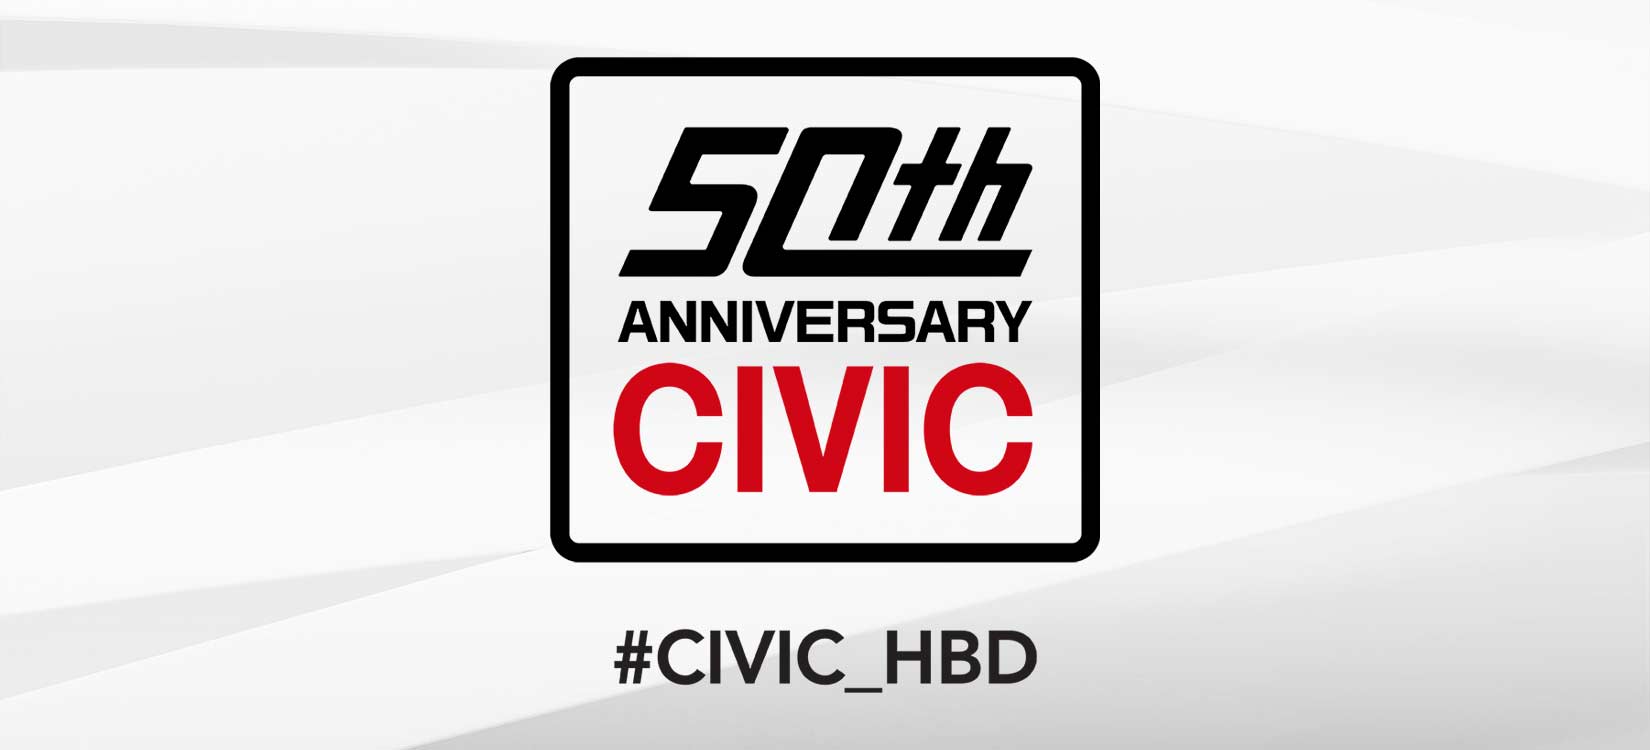 Honda Civic 50th Anniversary